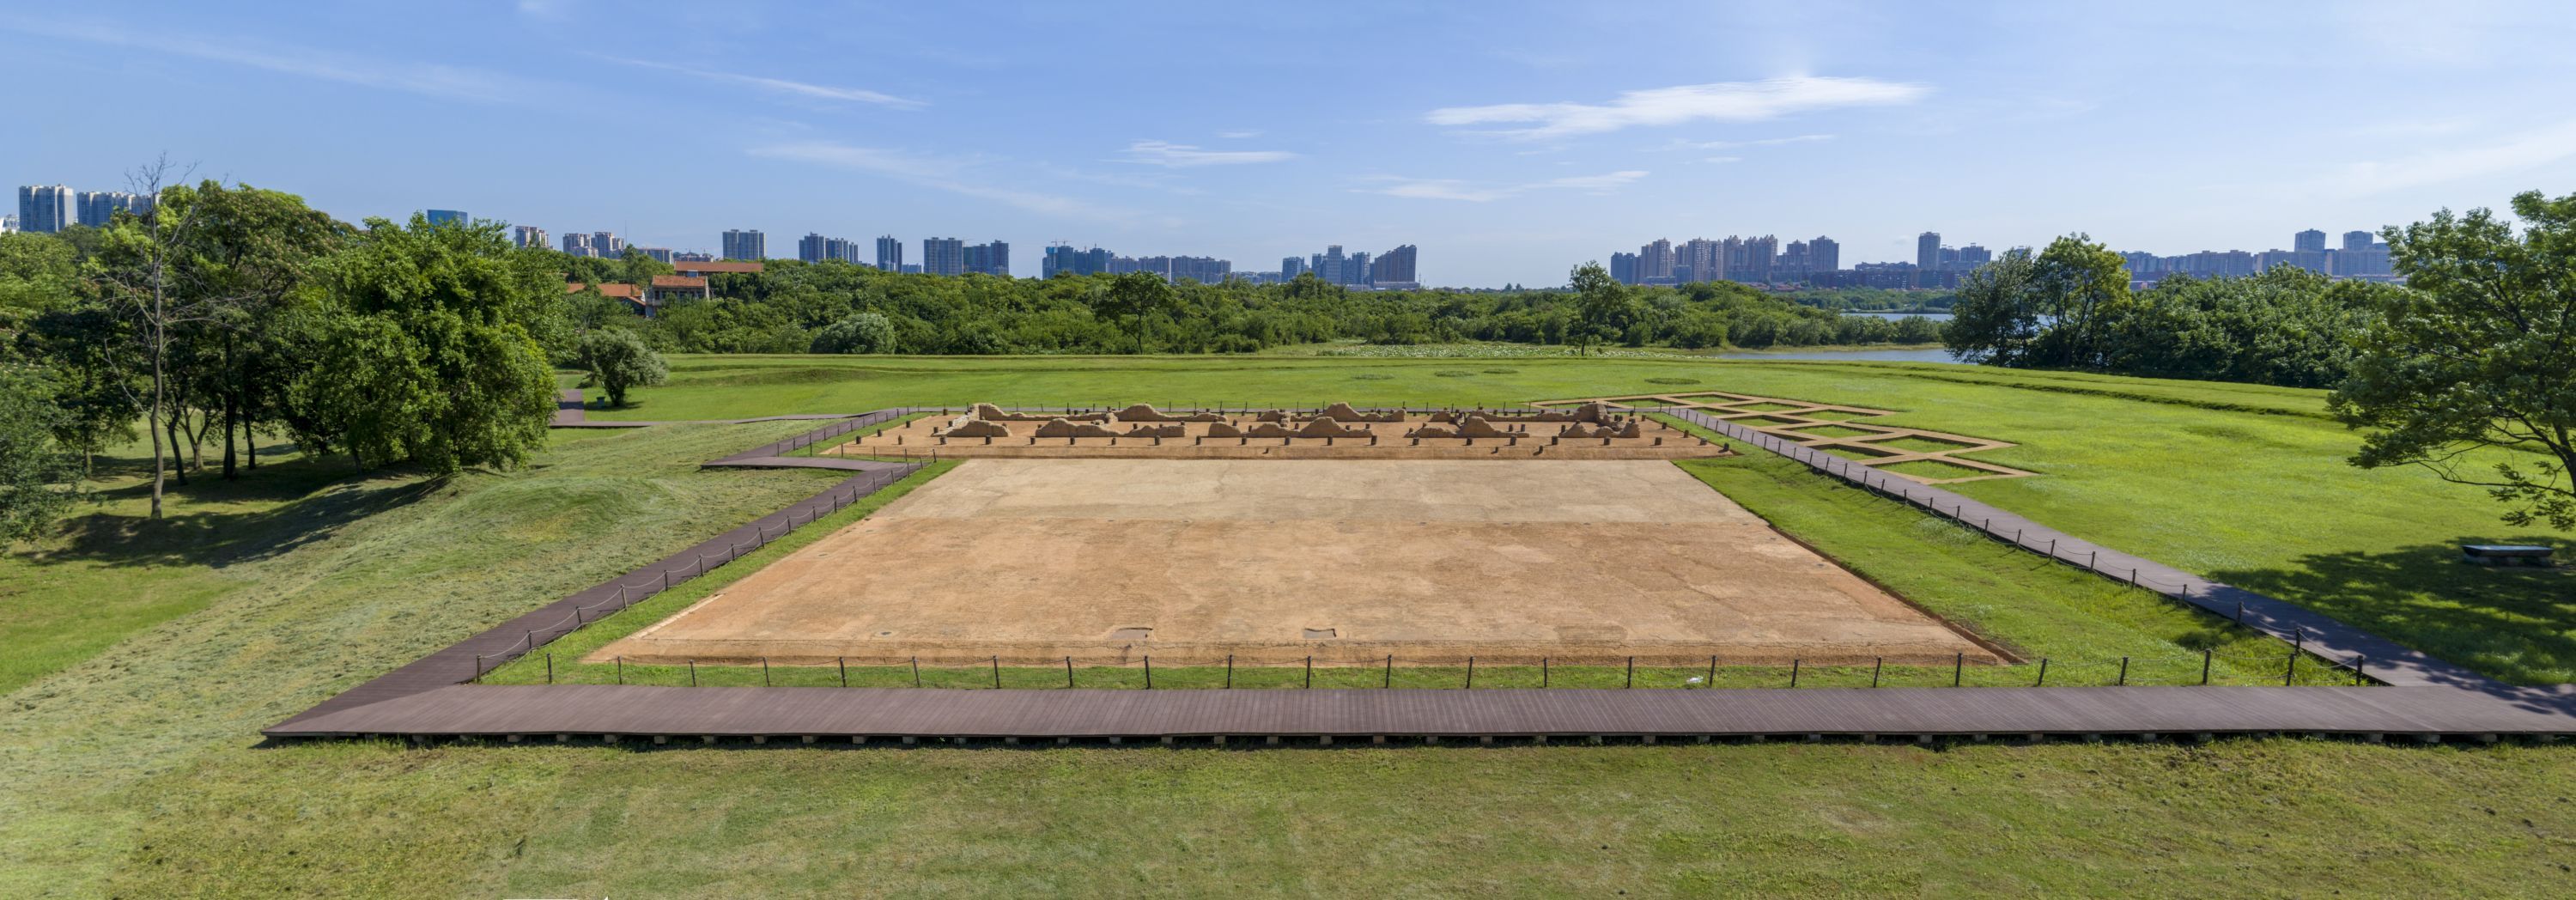 武汉盘龙城遗址入选"百年百大考古发现"